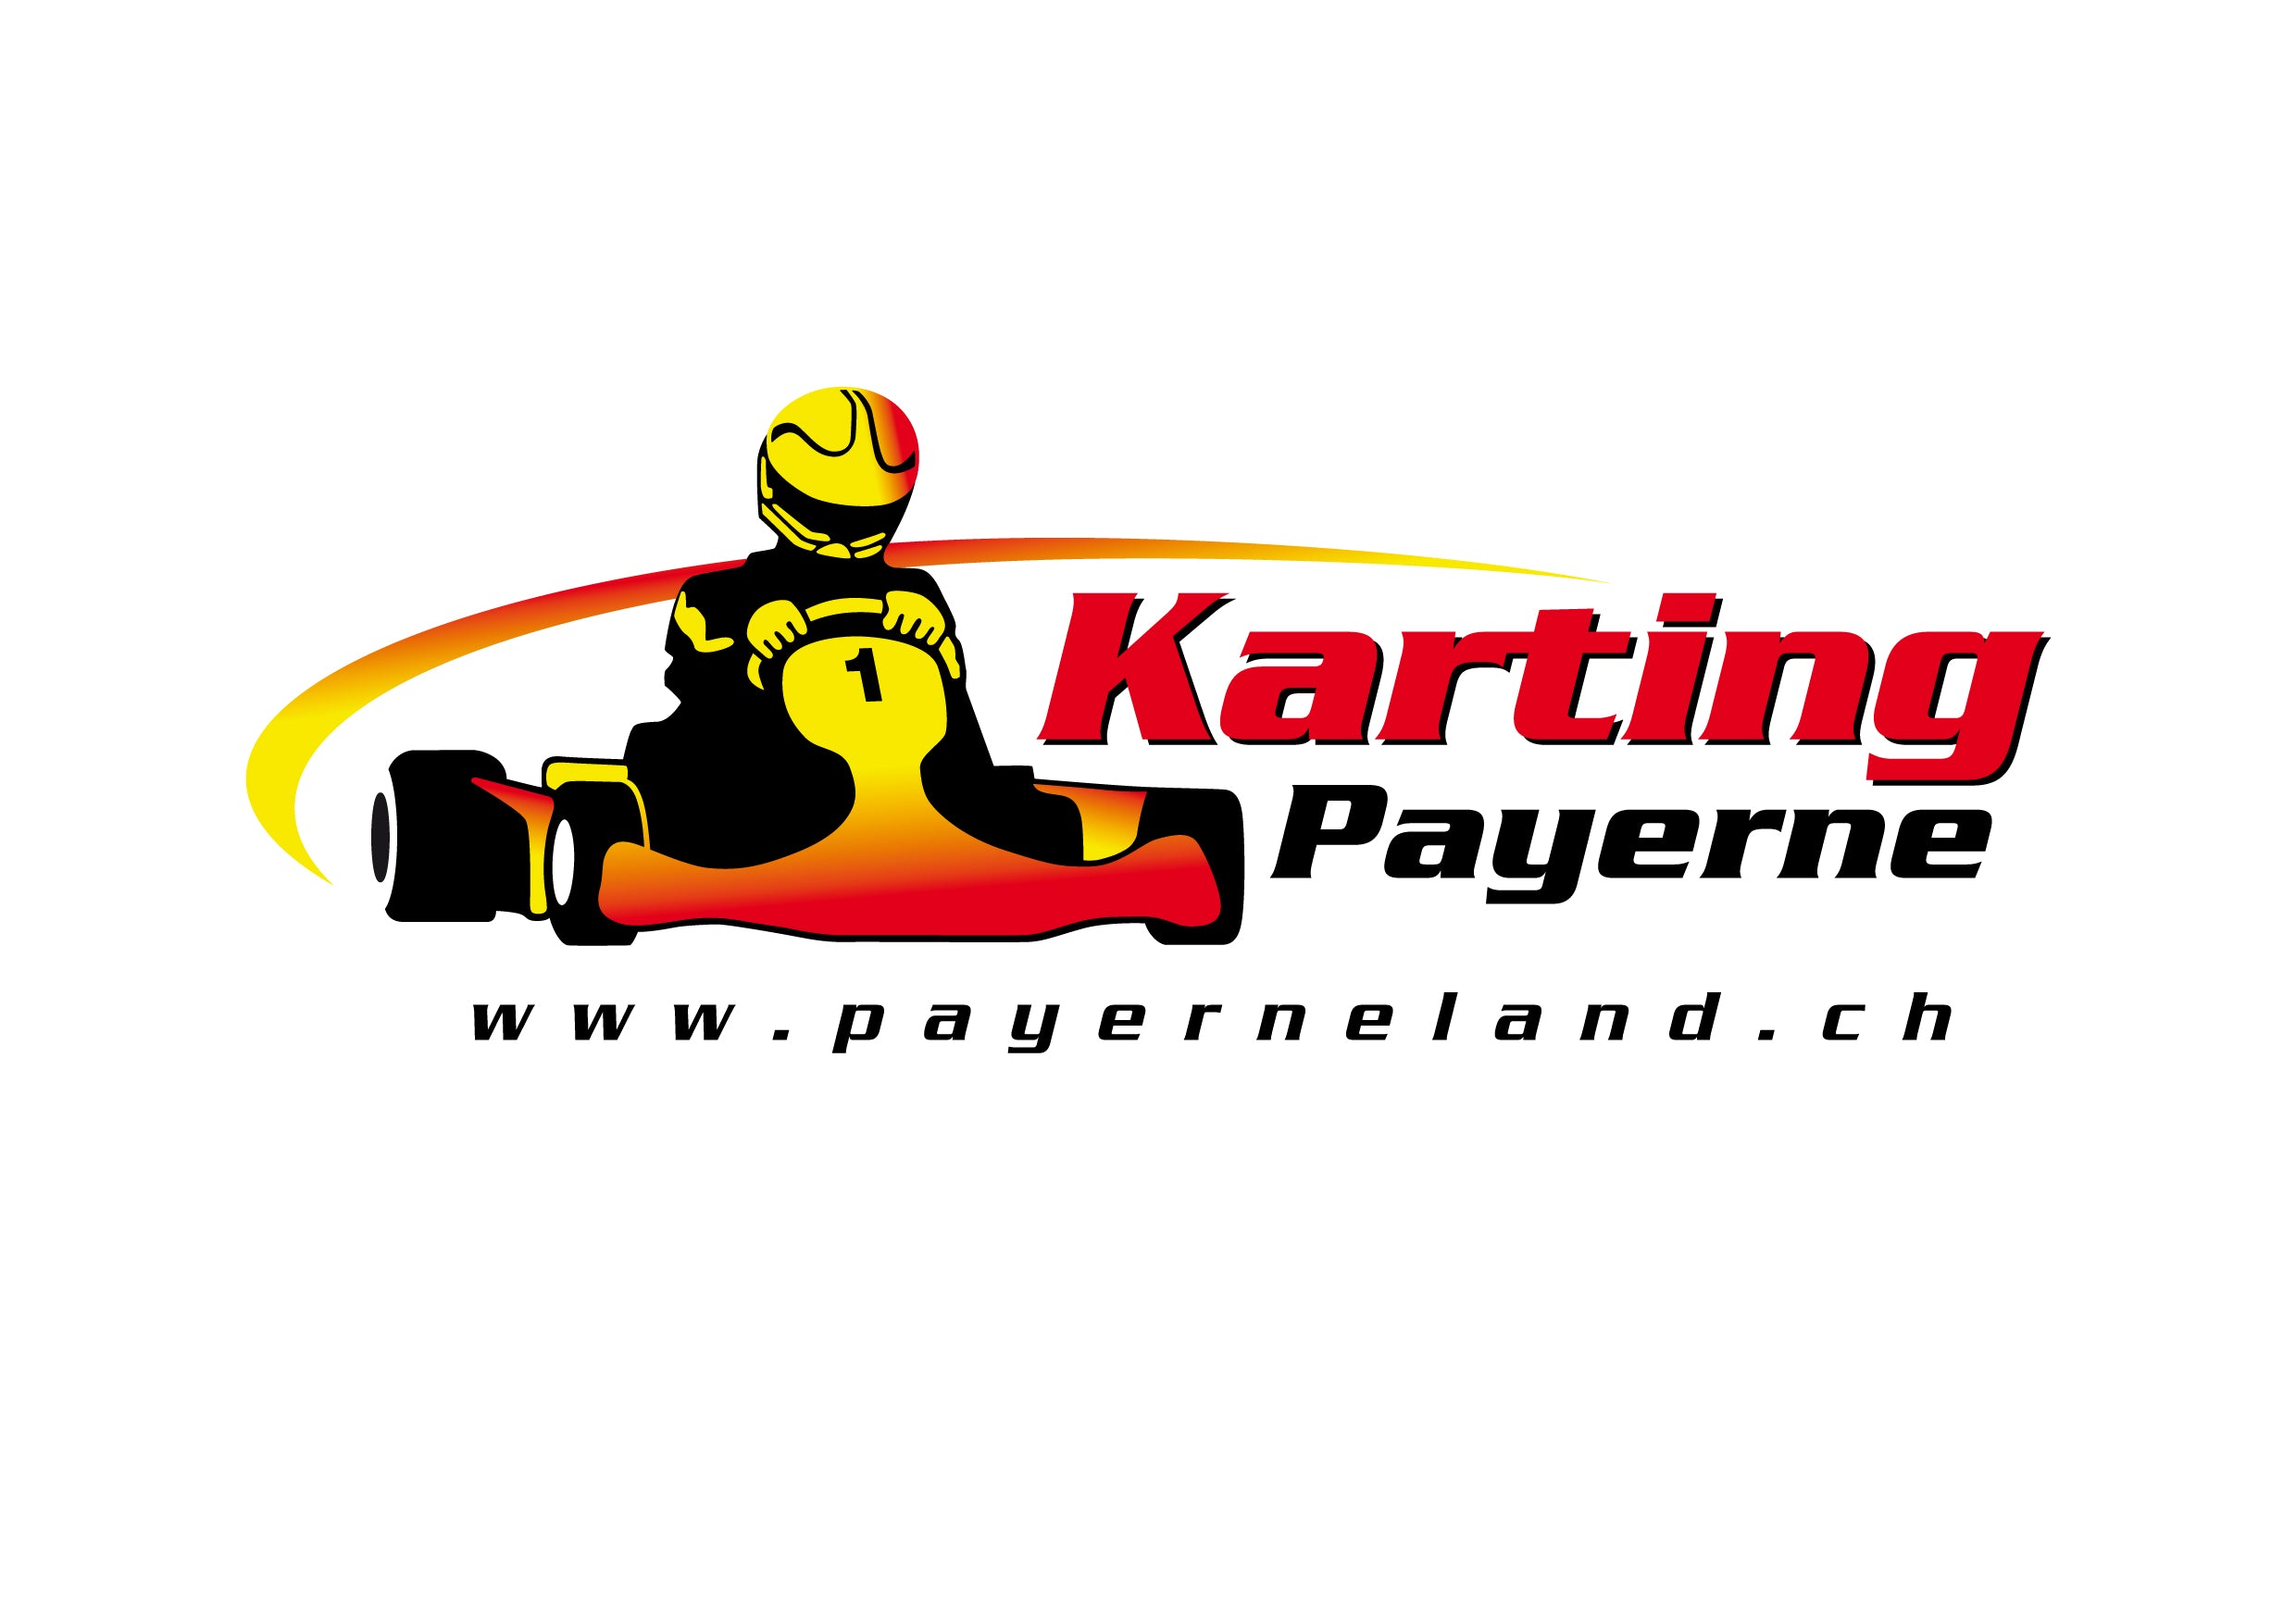 Karting Payerneland